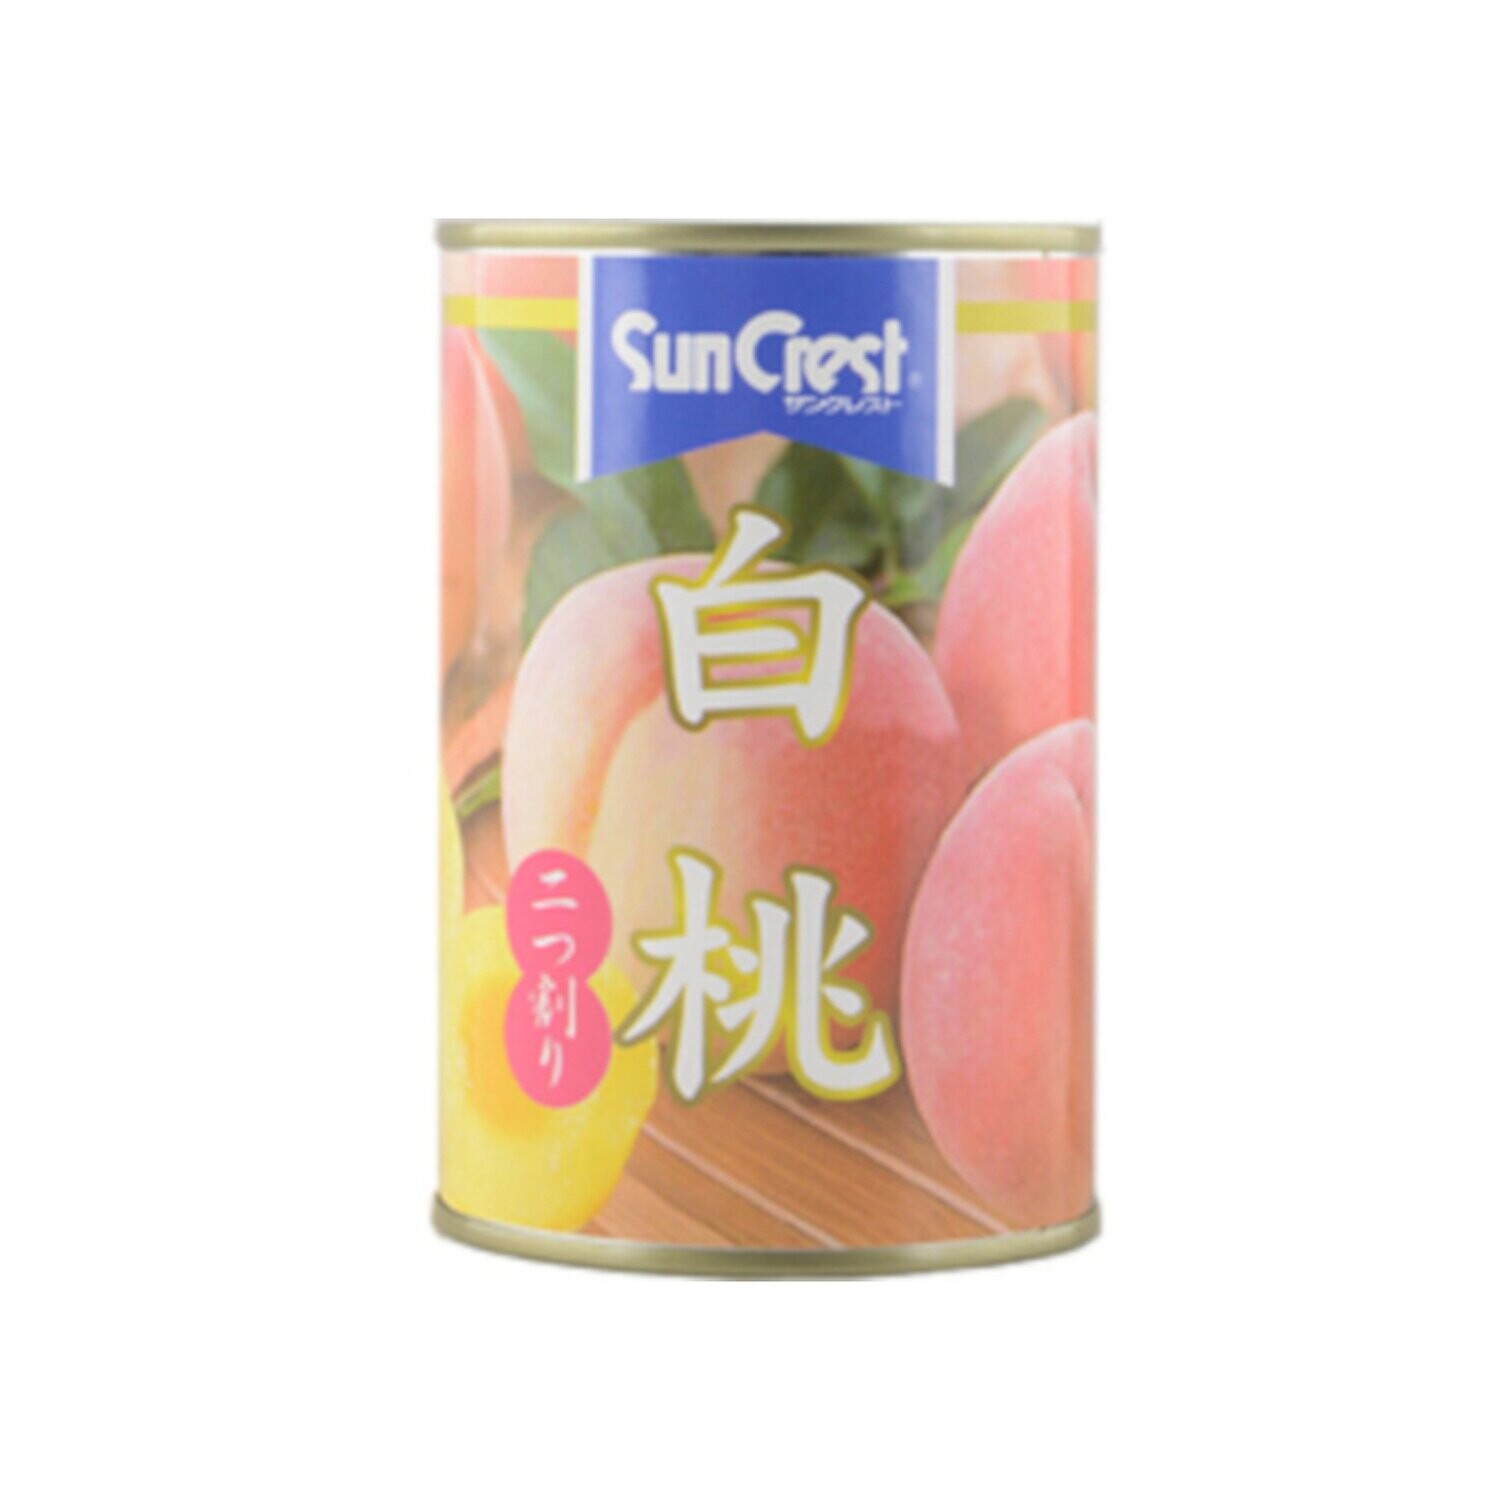 Suncrest White Peach Can (425G)